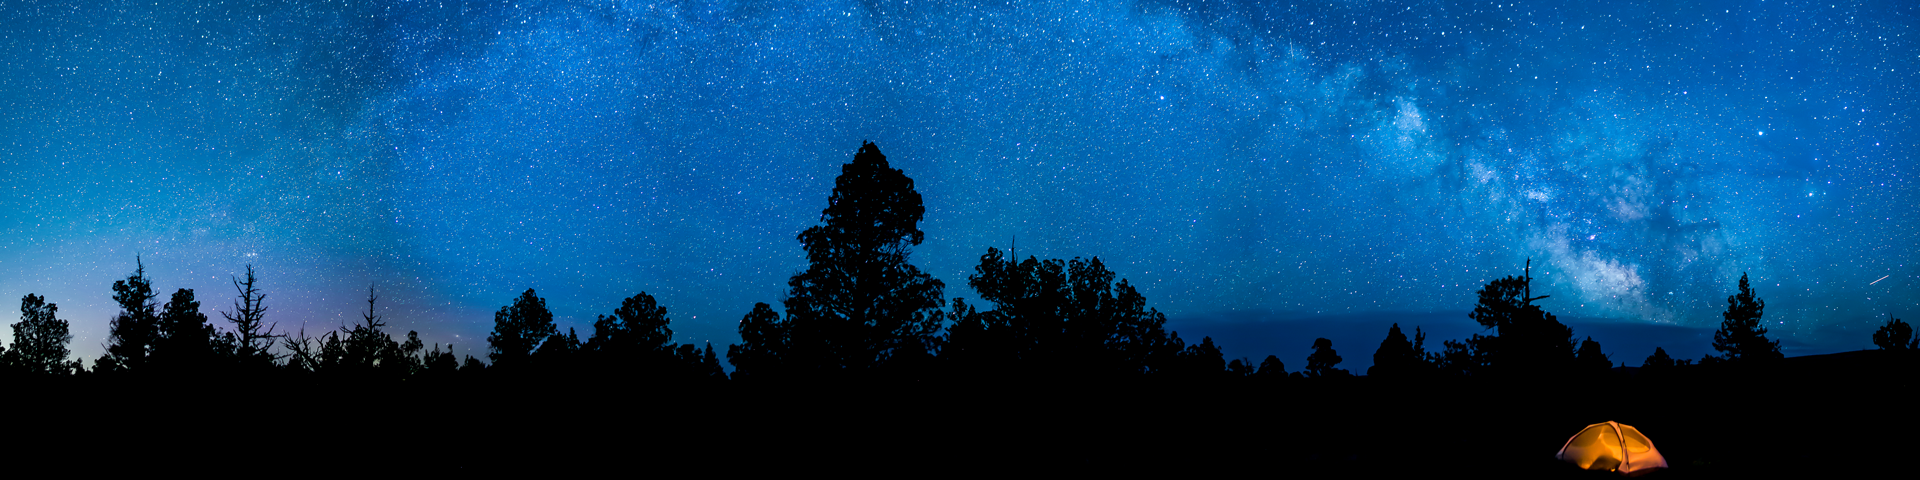 Oregon Badlands & the Milky Way